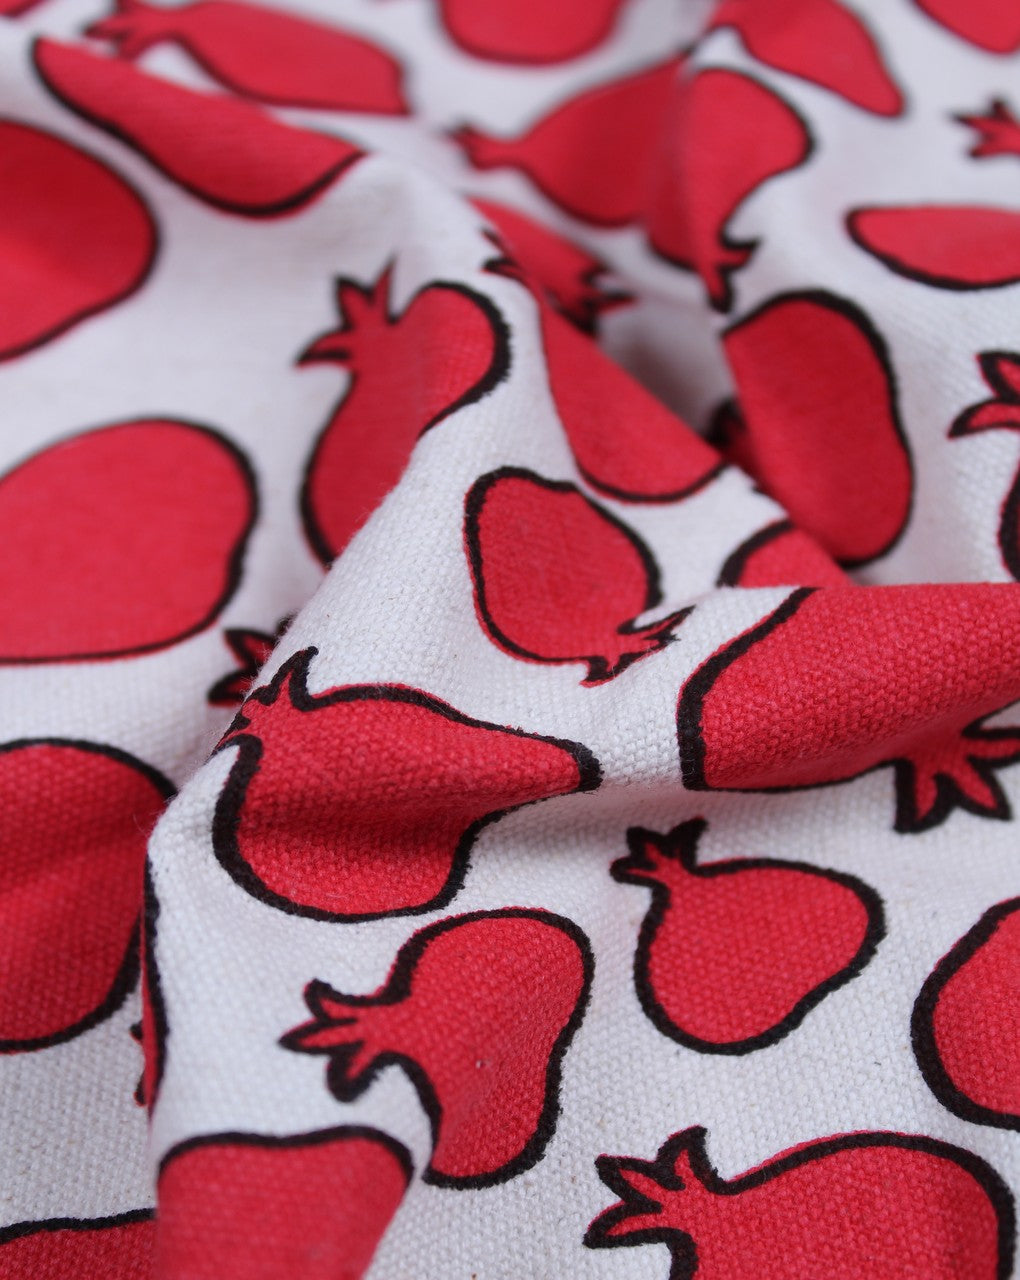 White Red Pomegranate Design Cotton Canvas Fabric